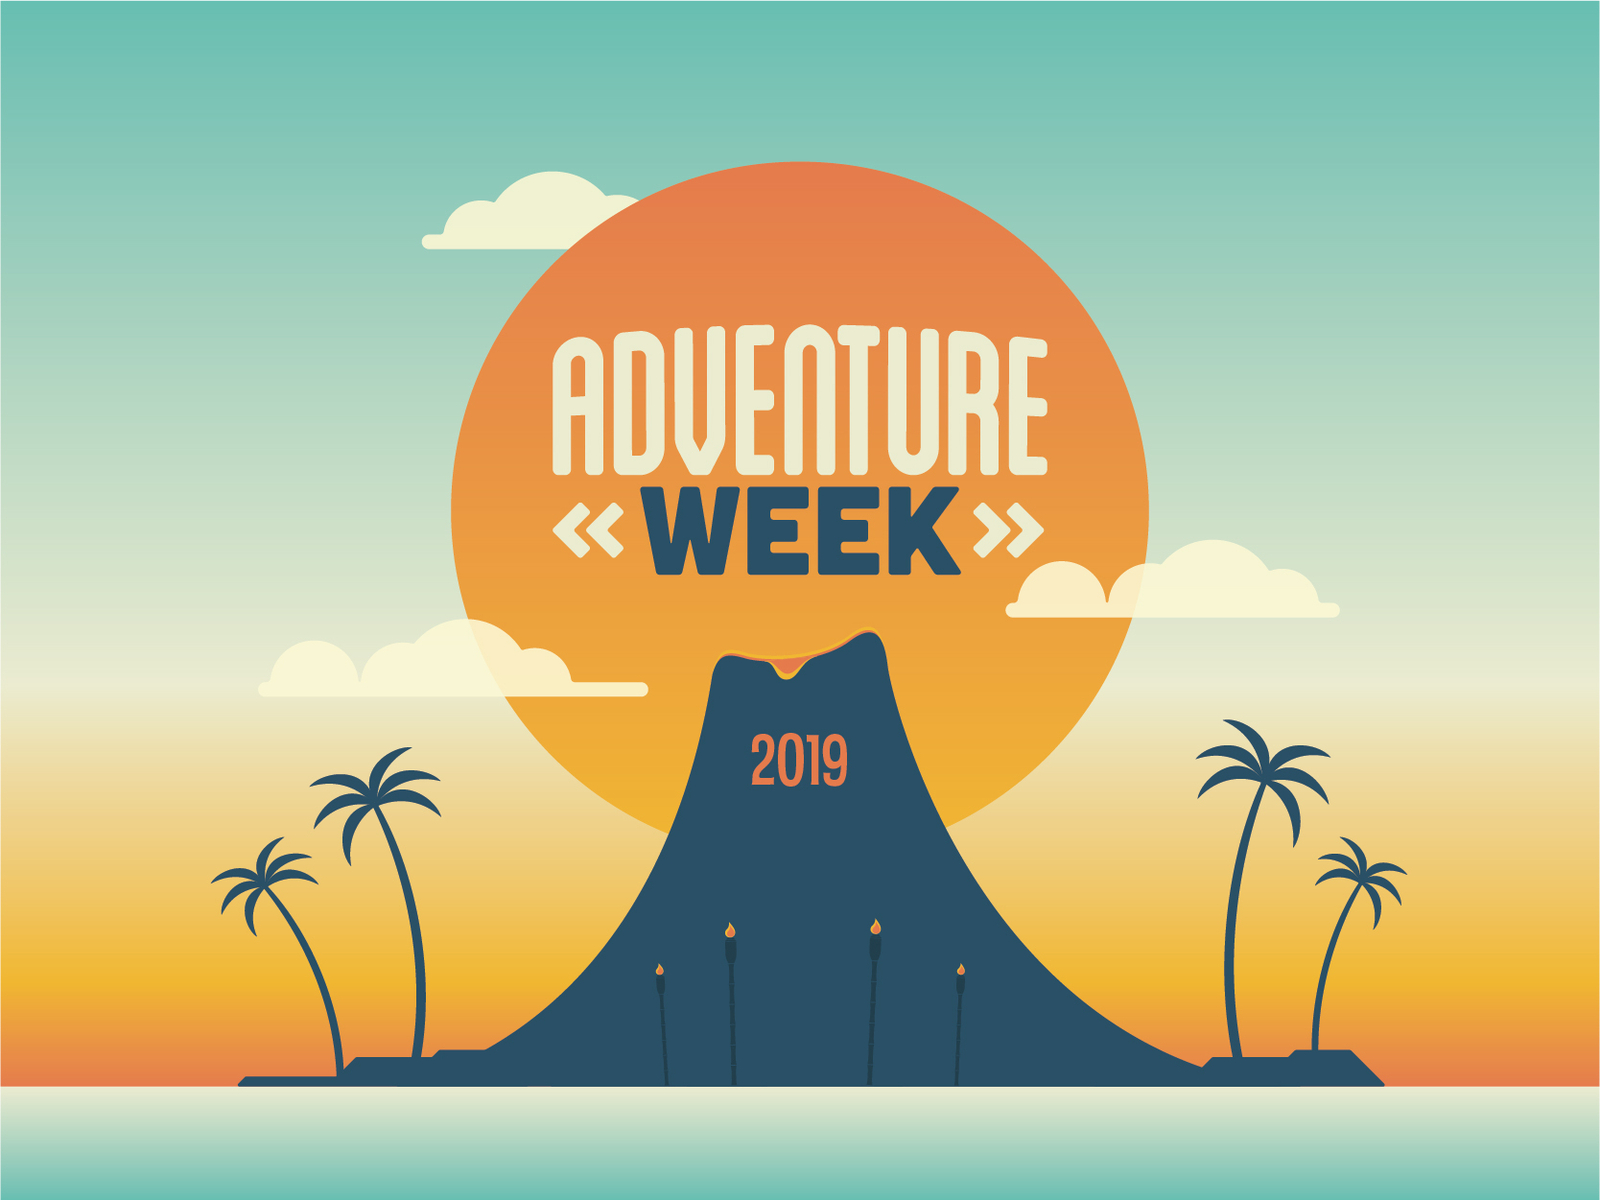 Adventure Week 2019 Branding by Caleb Crosby on Dribbble